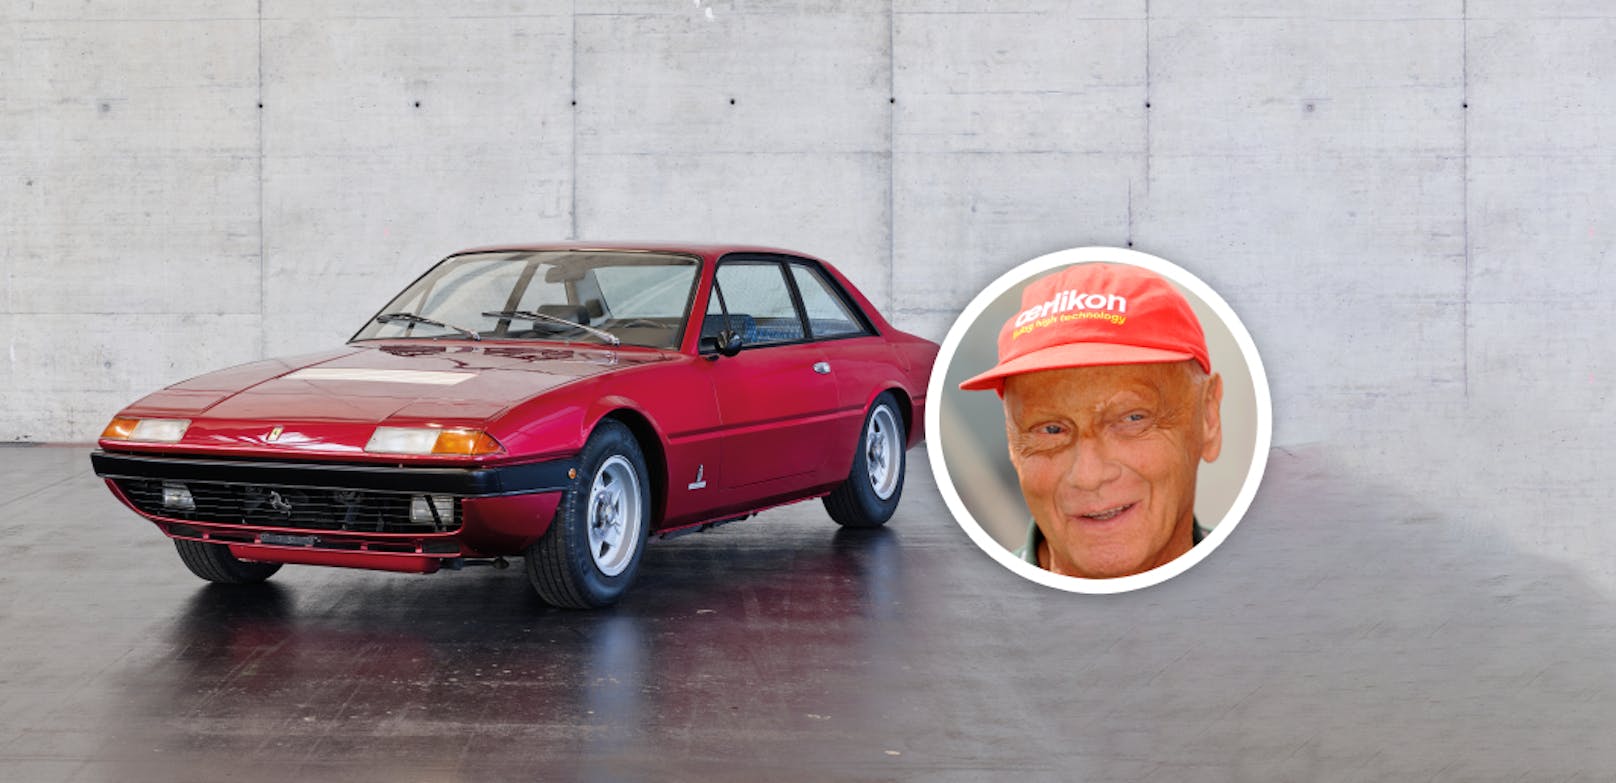 Schnäppchen – Lauda-Ferrari schon ab 30.000 € zu haben